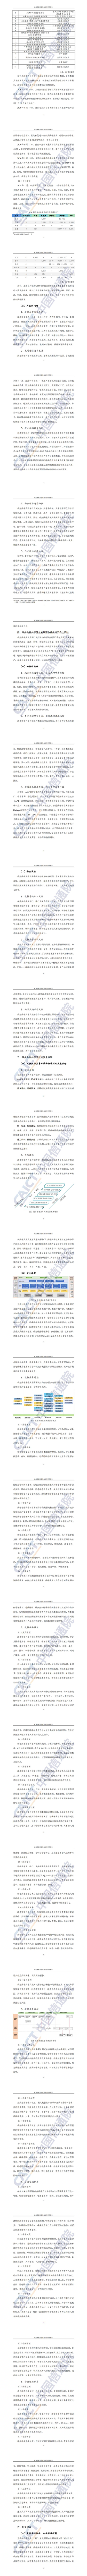 【中国信通院】政务数据共享开放安全研究报告_1.jpg